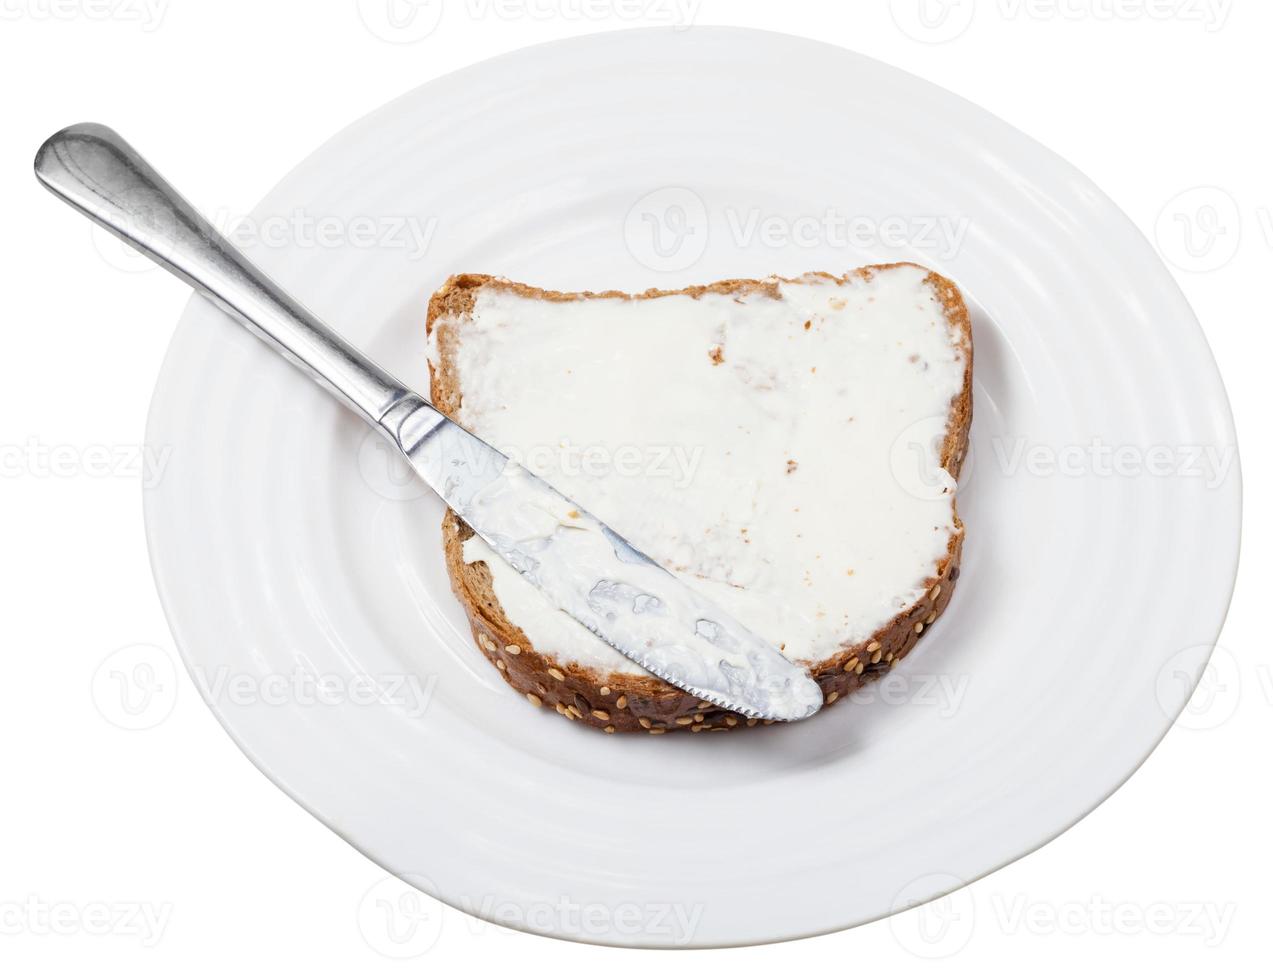 Brot und Weichkäse-Sandwich mit Messer auf dem Teller foto